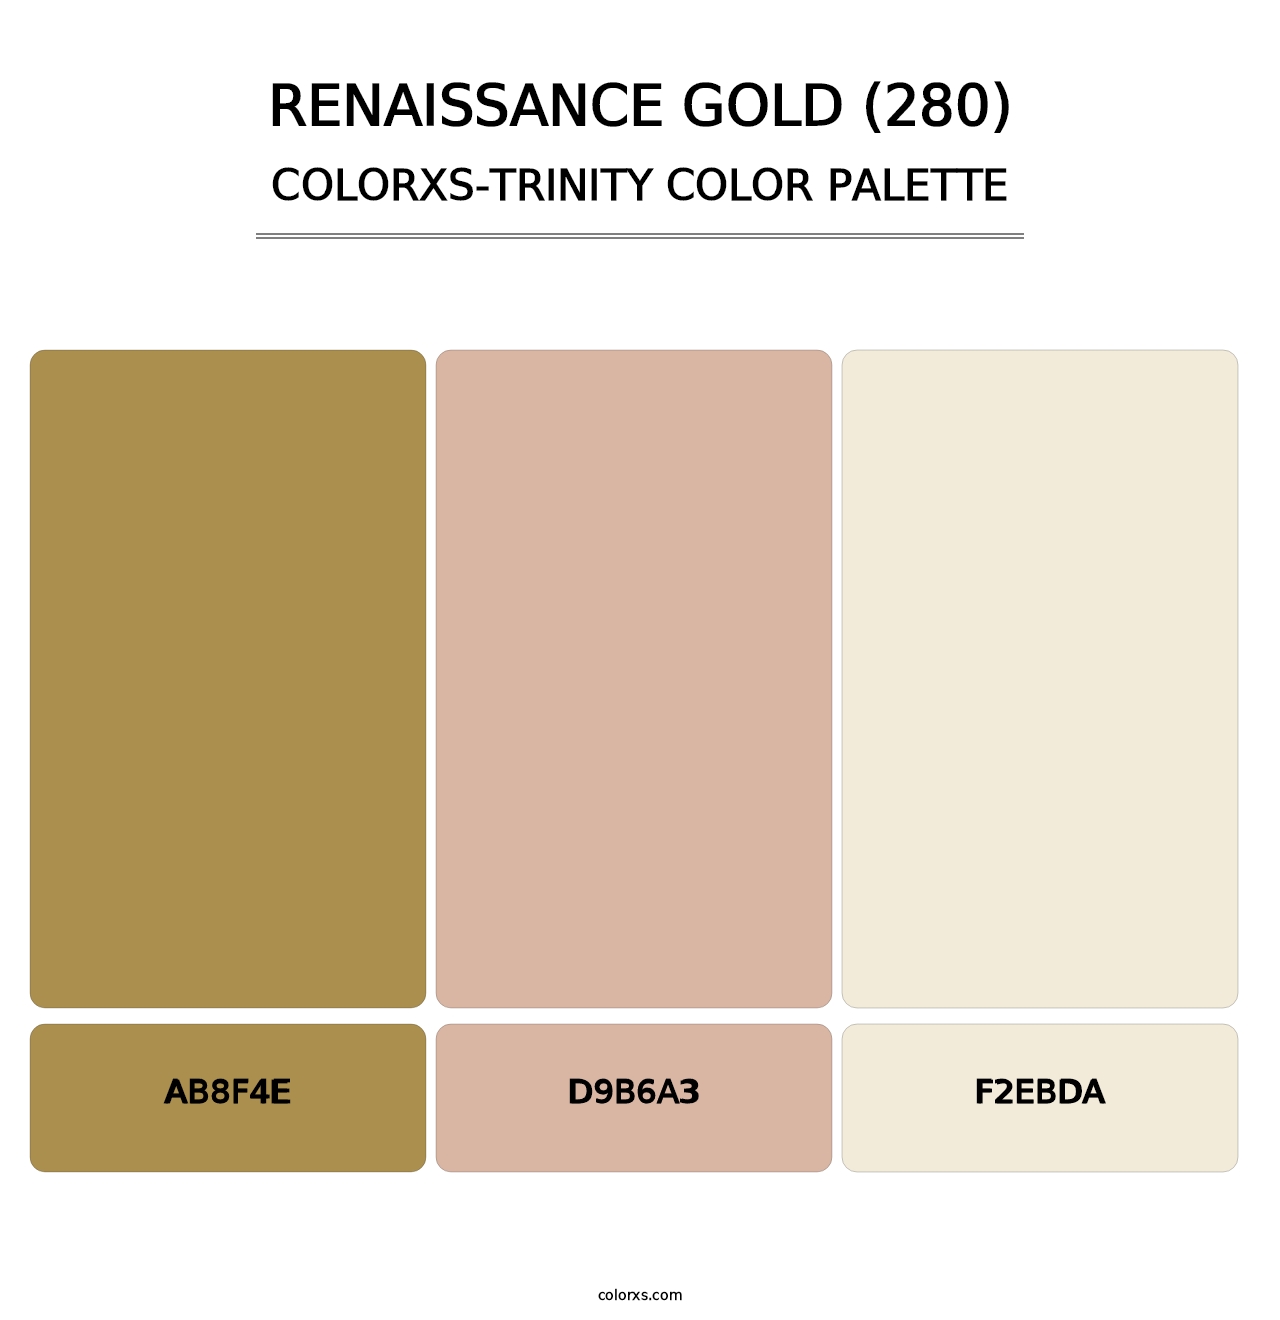 Renaissance Gold (280) - Colorxs Trinity Palette